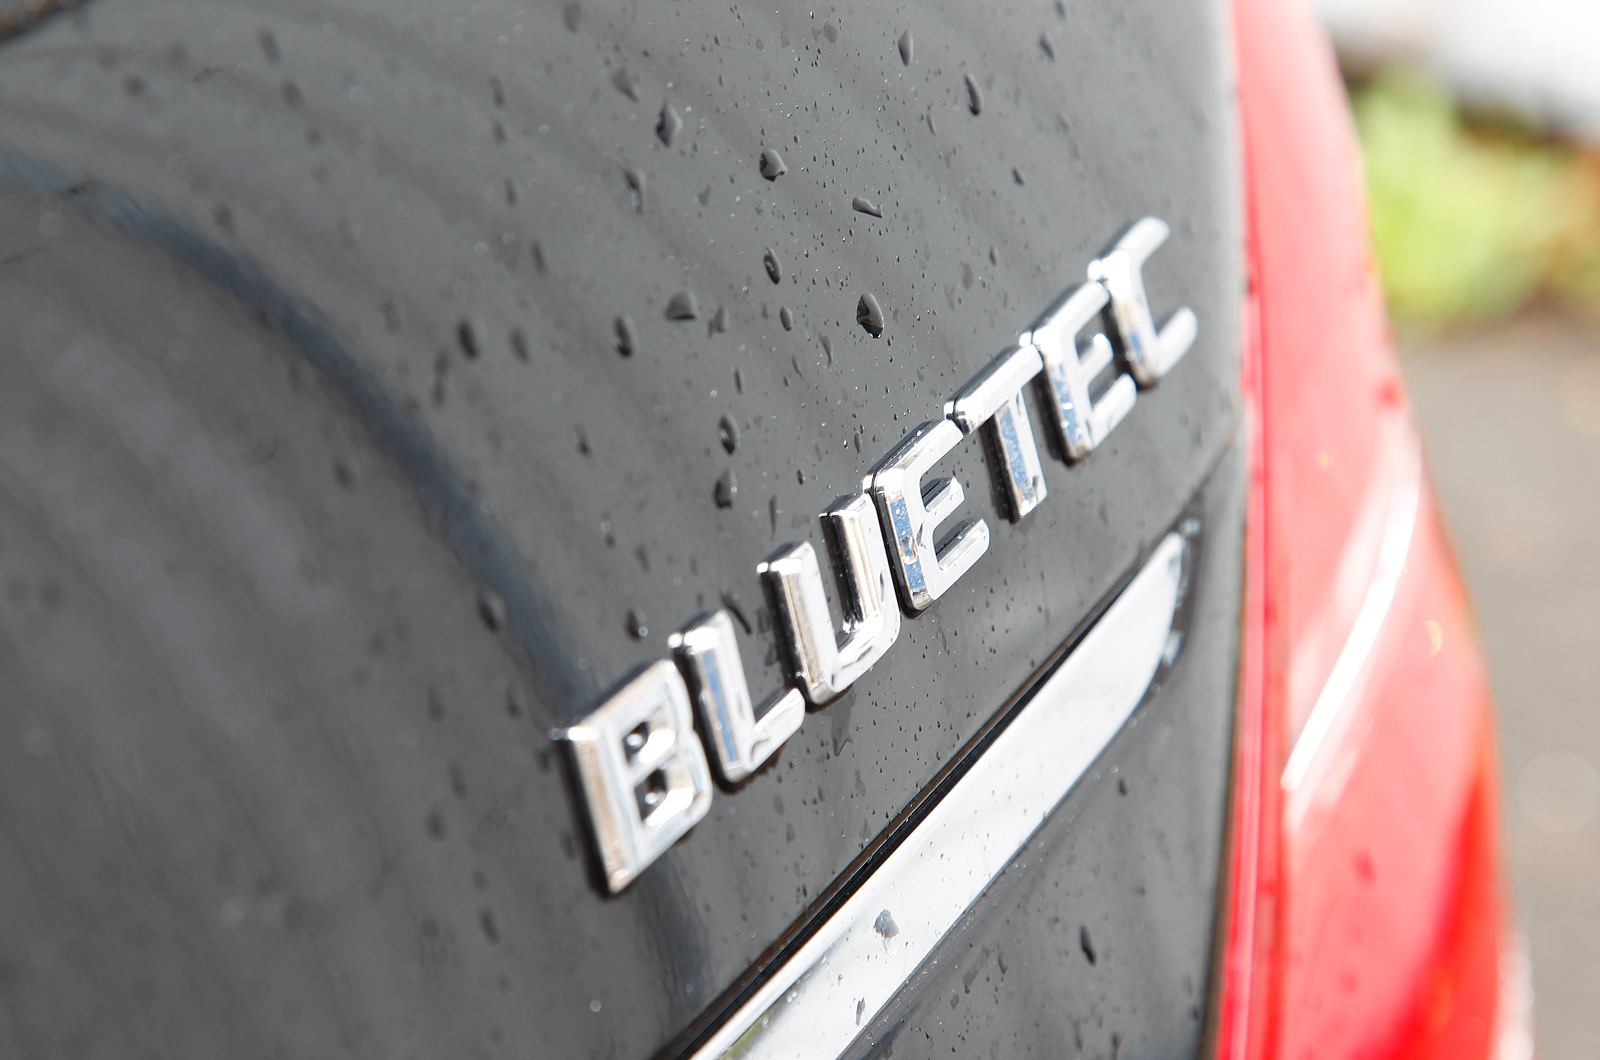 Mercedes-Benz S-Class Bluetec badging